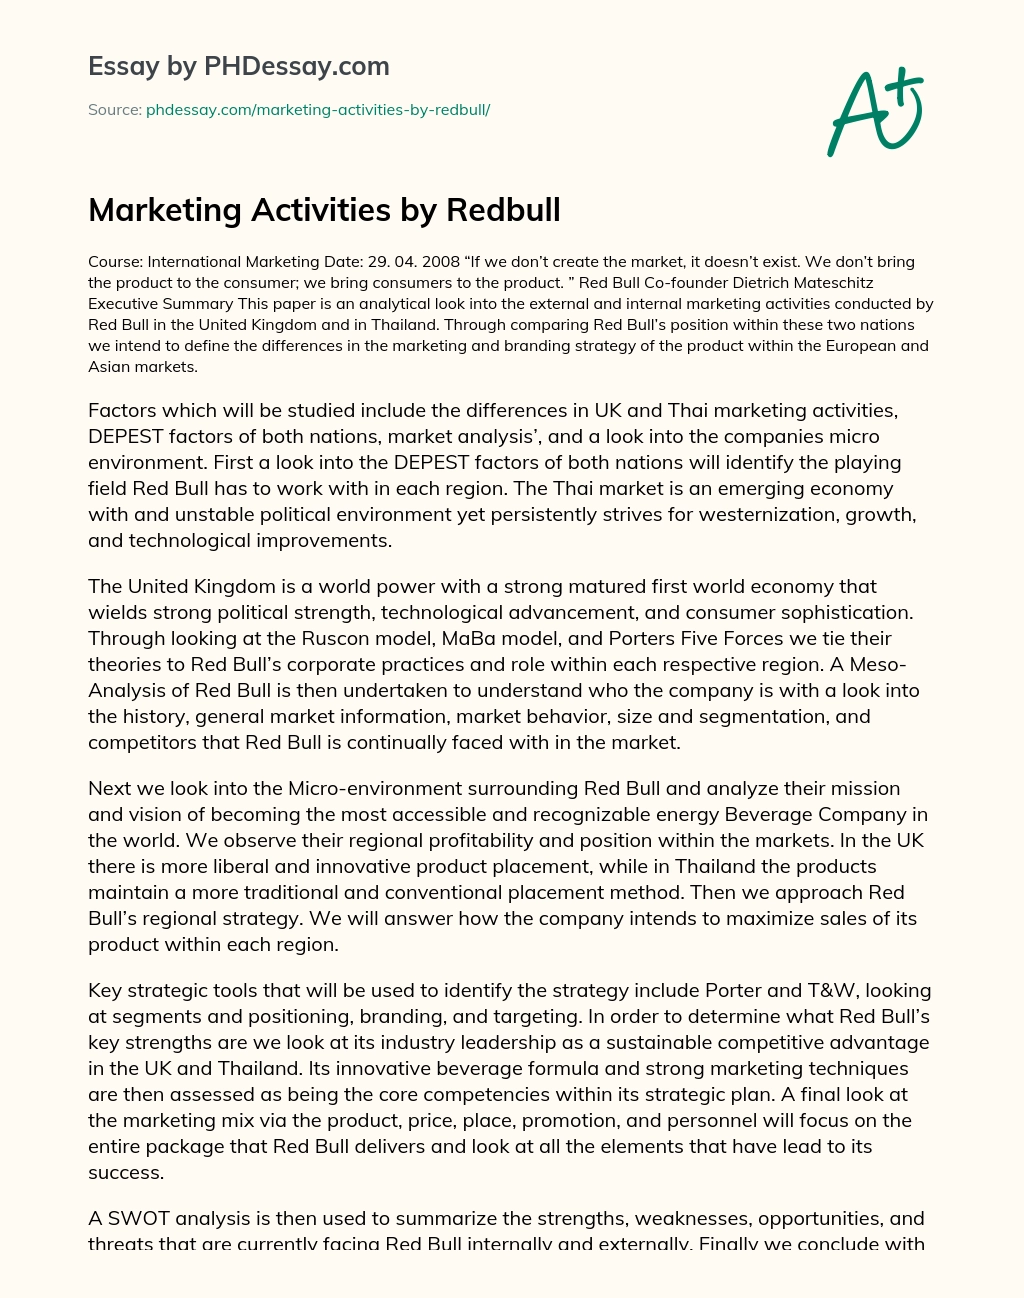 Marketing Activities by Redbull essay